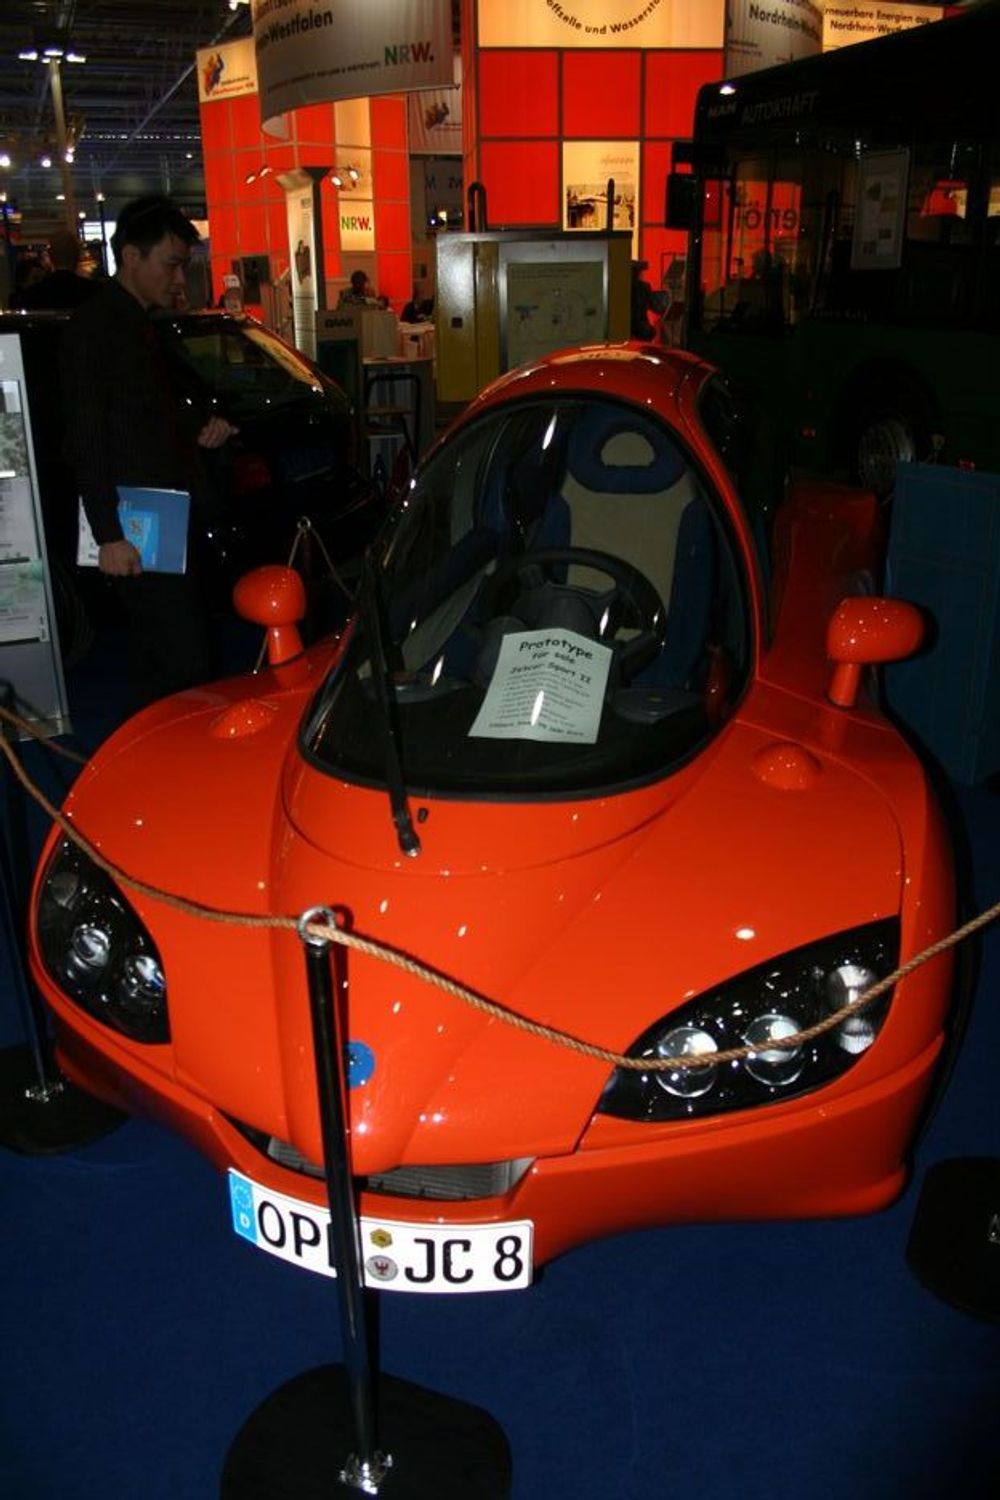 Prototypen Jetcar sport 2 var til salgs for 75 000 Euro. Bilen klarer 100 kilometer per liter bensin. (Ps. Den er ikke jet-drevet)